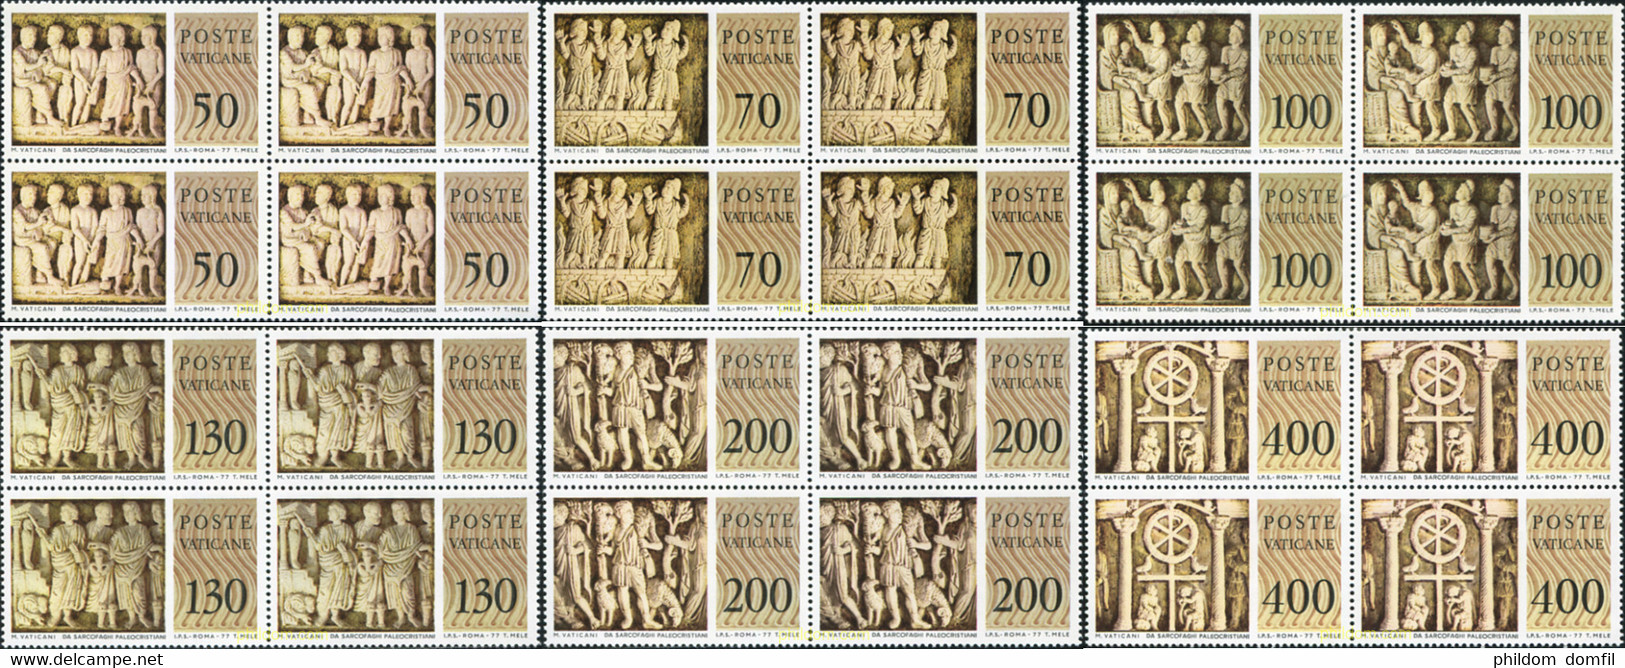 621184 MNH VATICANO 1977 MUSEO DEL VATICANO. BAJO-RELIEVES DE SARCOFAGOS PALEOCRISTIANOS - Used Stamps